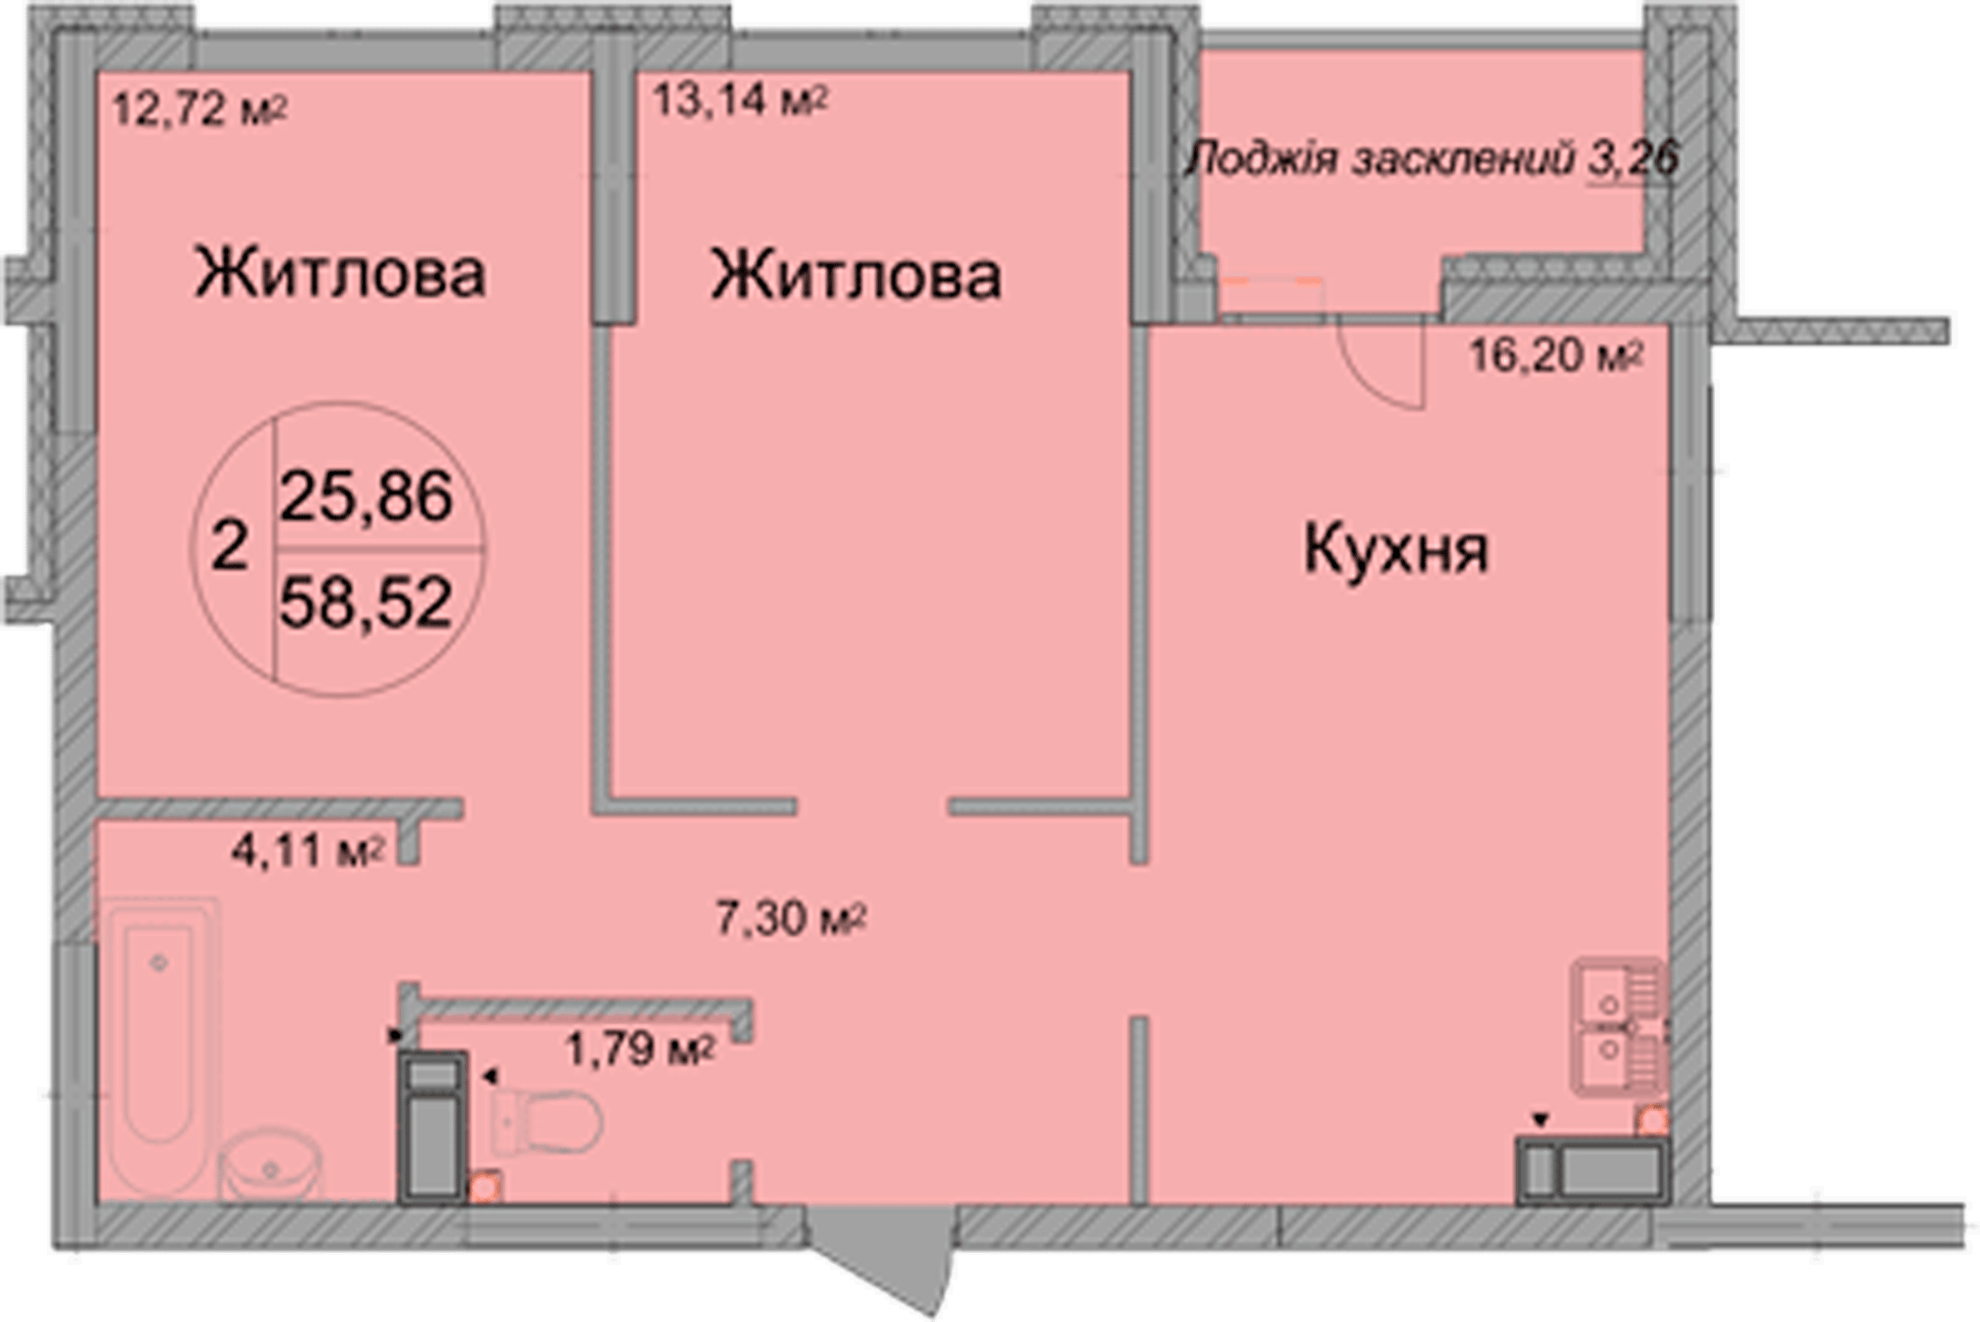 2-кімнатна 58.52 м² в ЖК Святобор від 26 625 грн/м², Київ